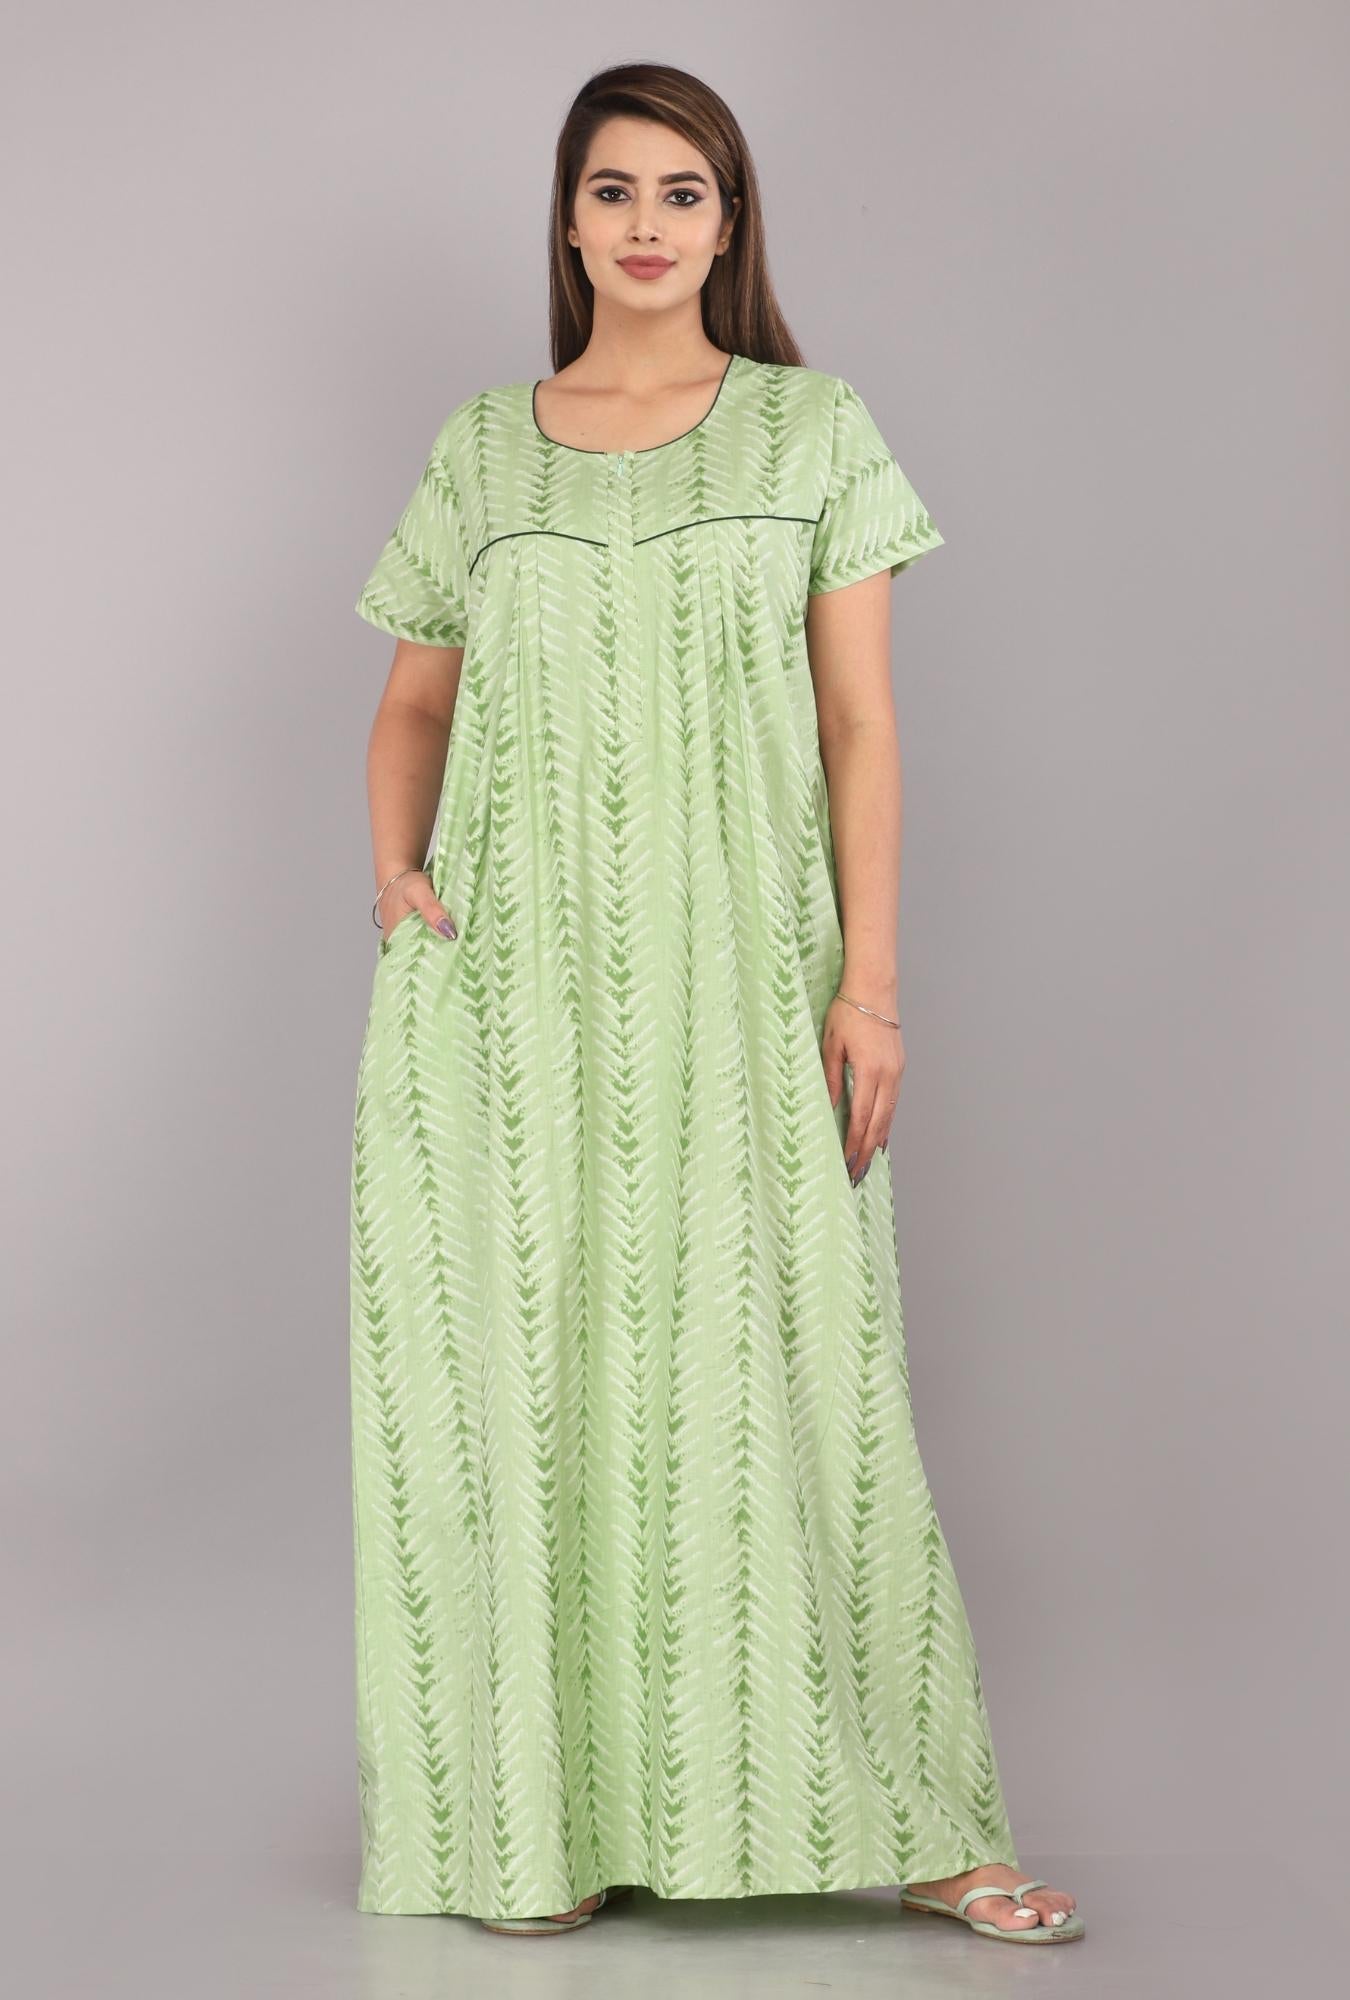 Shibori Green Cotton Printed Nightwear Gowns